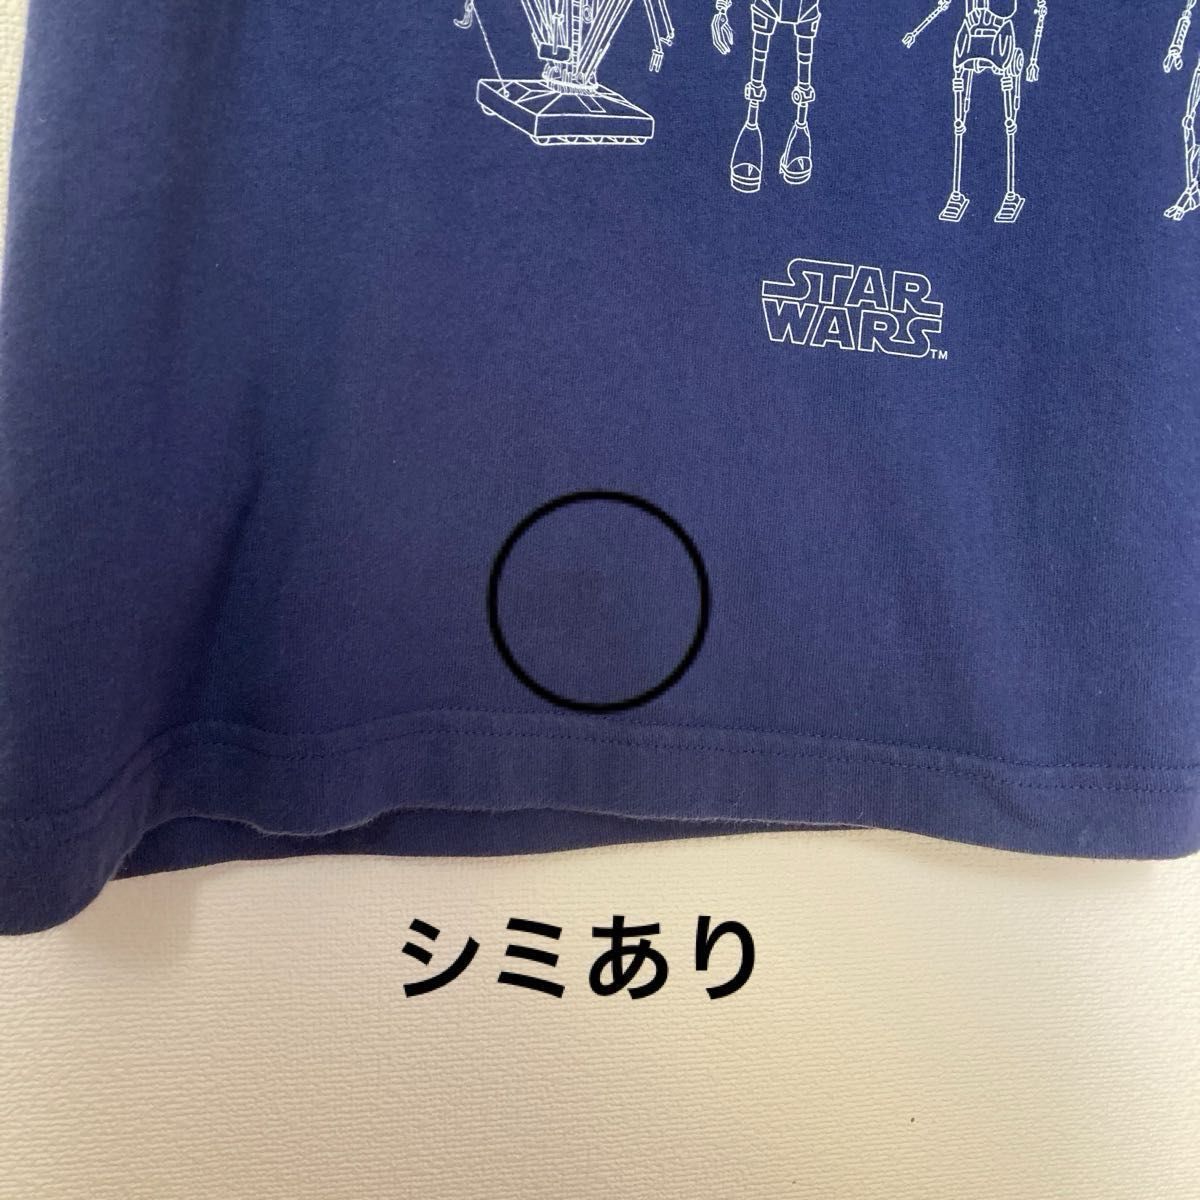 【UNIQLO】 2015 スターウォーズ　半袖Tシャツ　メンズMサイズ  ネイビー 